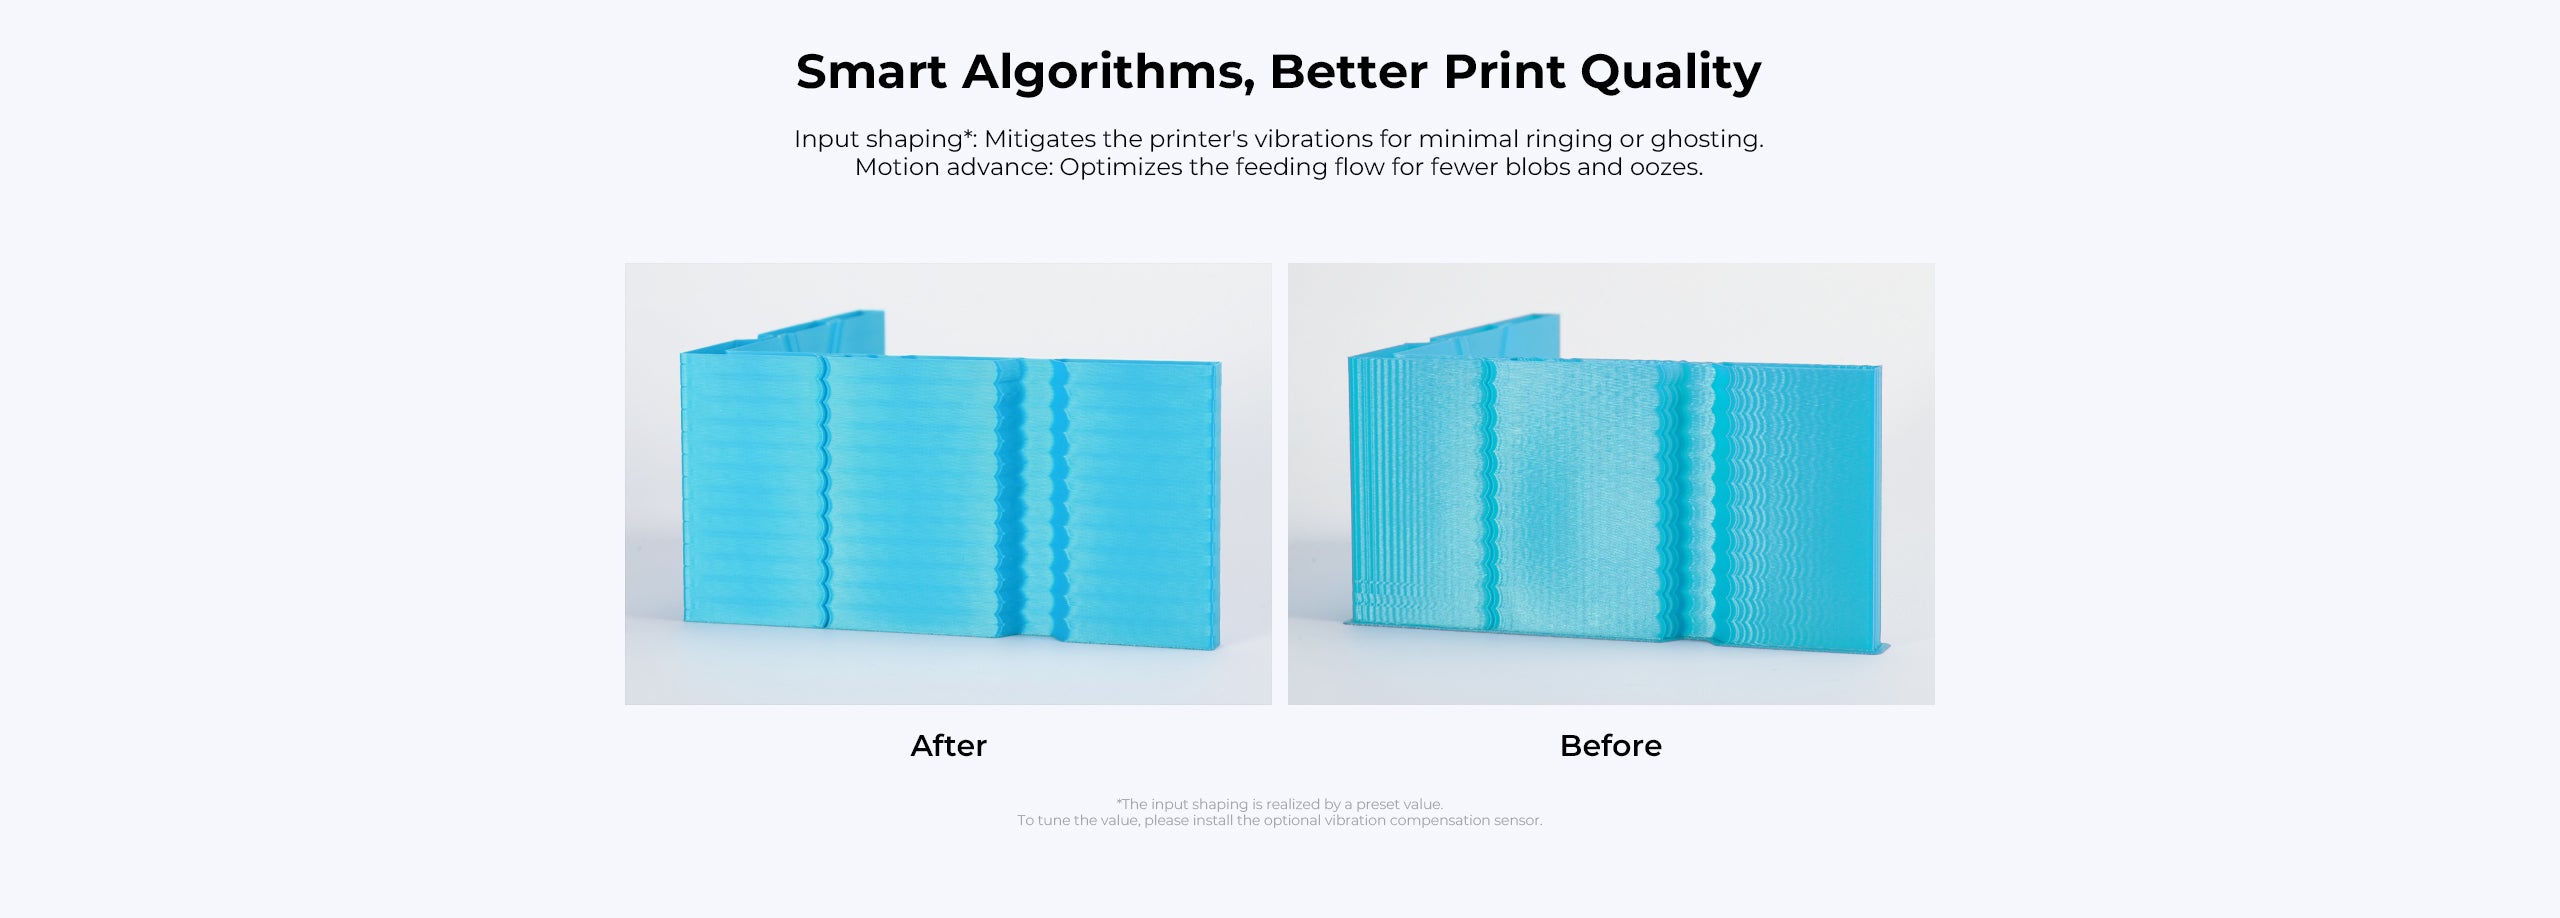 Ender 3 V3 KE has smart algorithms, better print quality